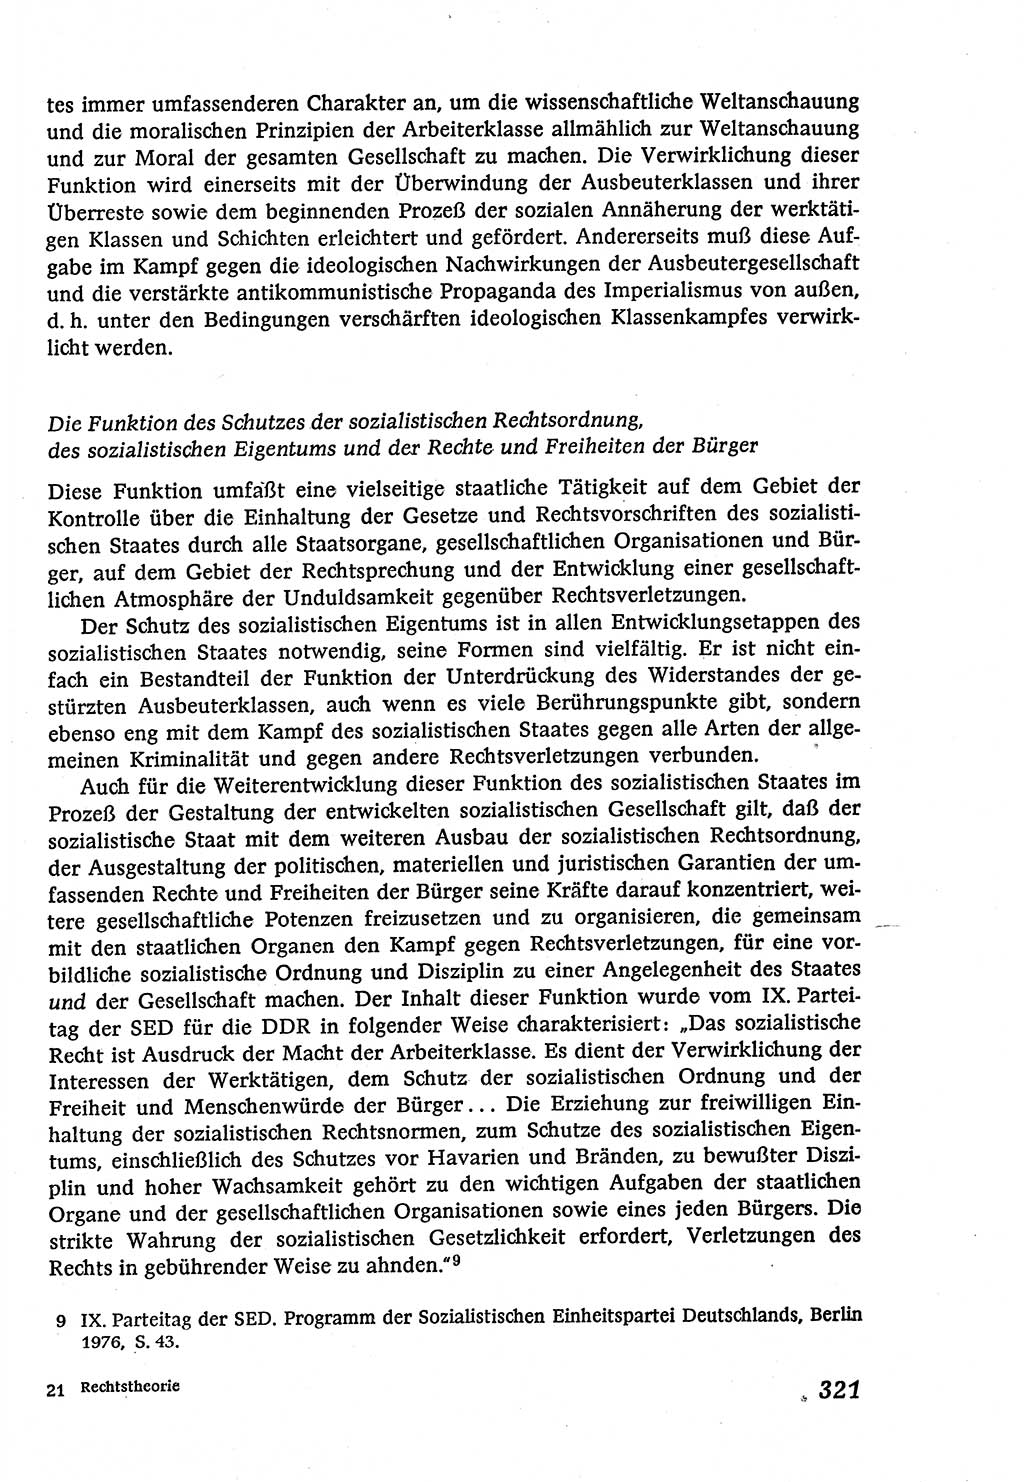 Marxistisch-leninistische (ML) Staats- und Rechtstheorie [Deutsche Demokratische Republik (DDR)], Lehrbuch 1980, Seite 321 (ML St.-R.-Th. DDR Lb. 1980, S. 321)